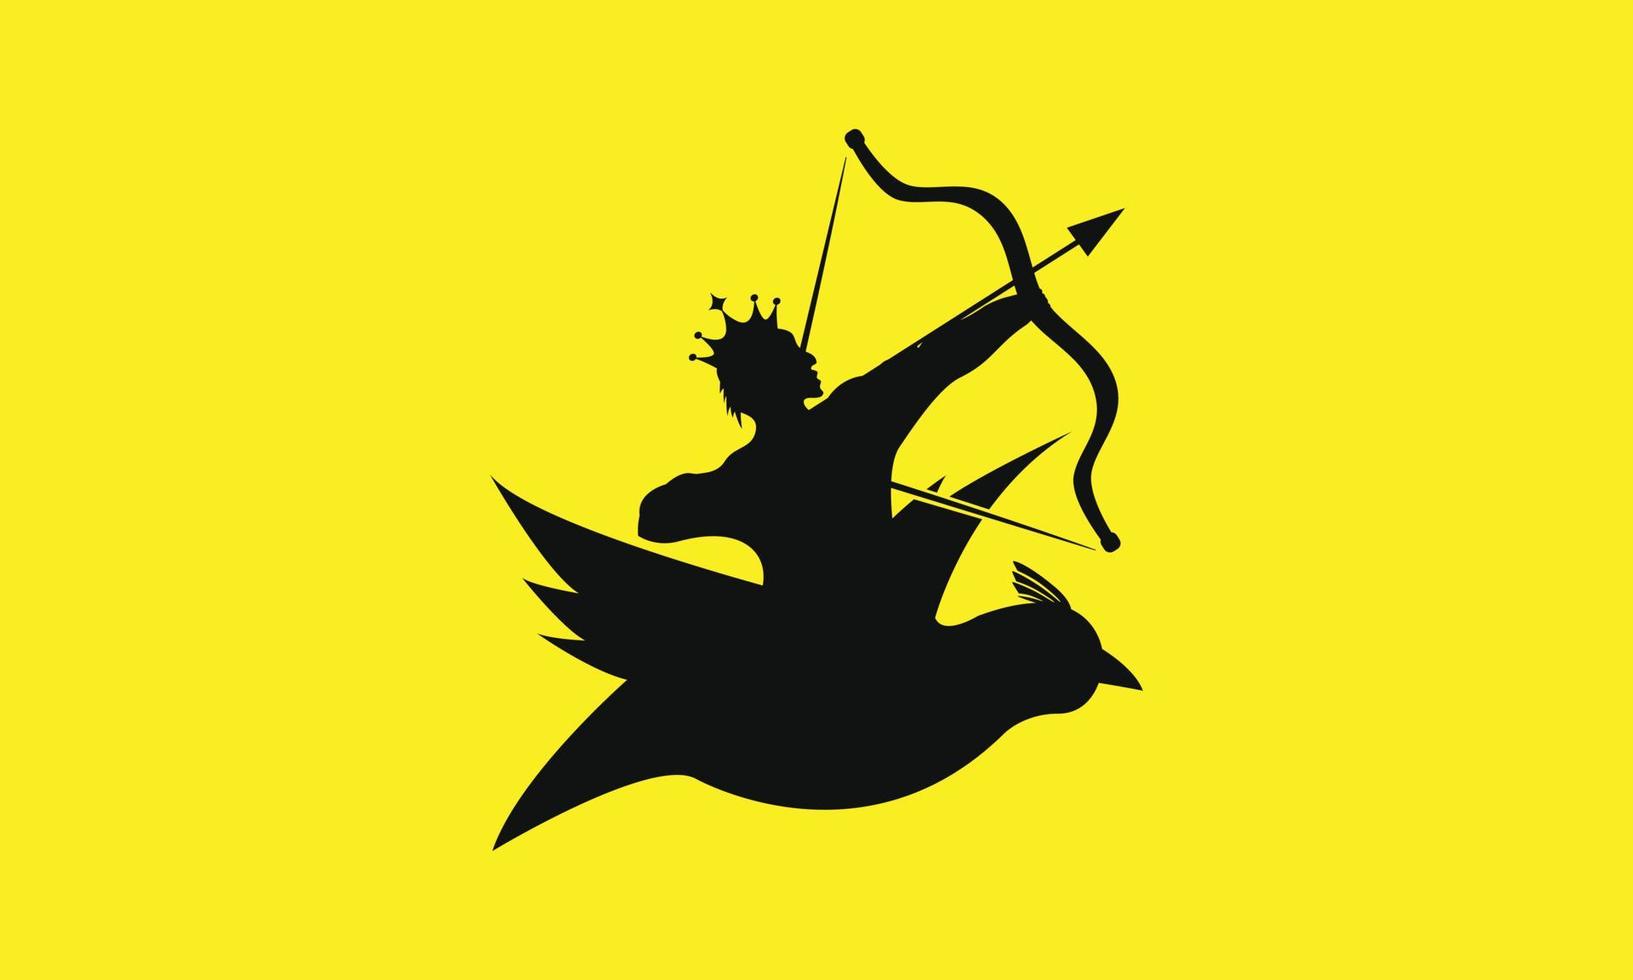 création de logo moderne d'archer créatif. archer fort avec modèle de vecteur d'oiseaux